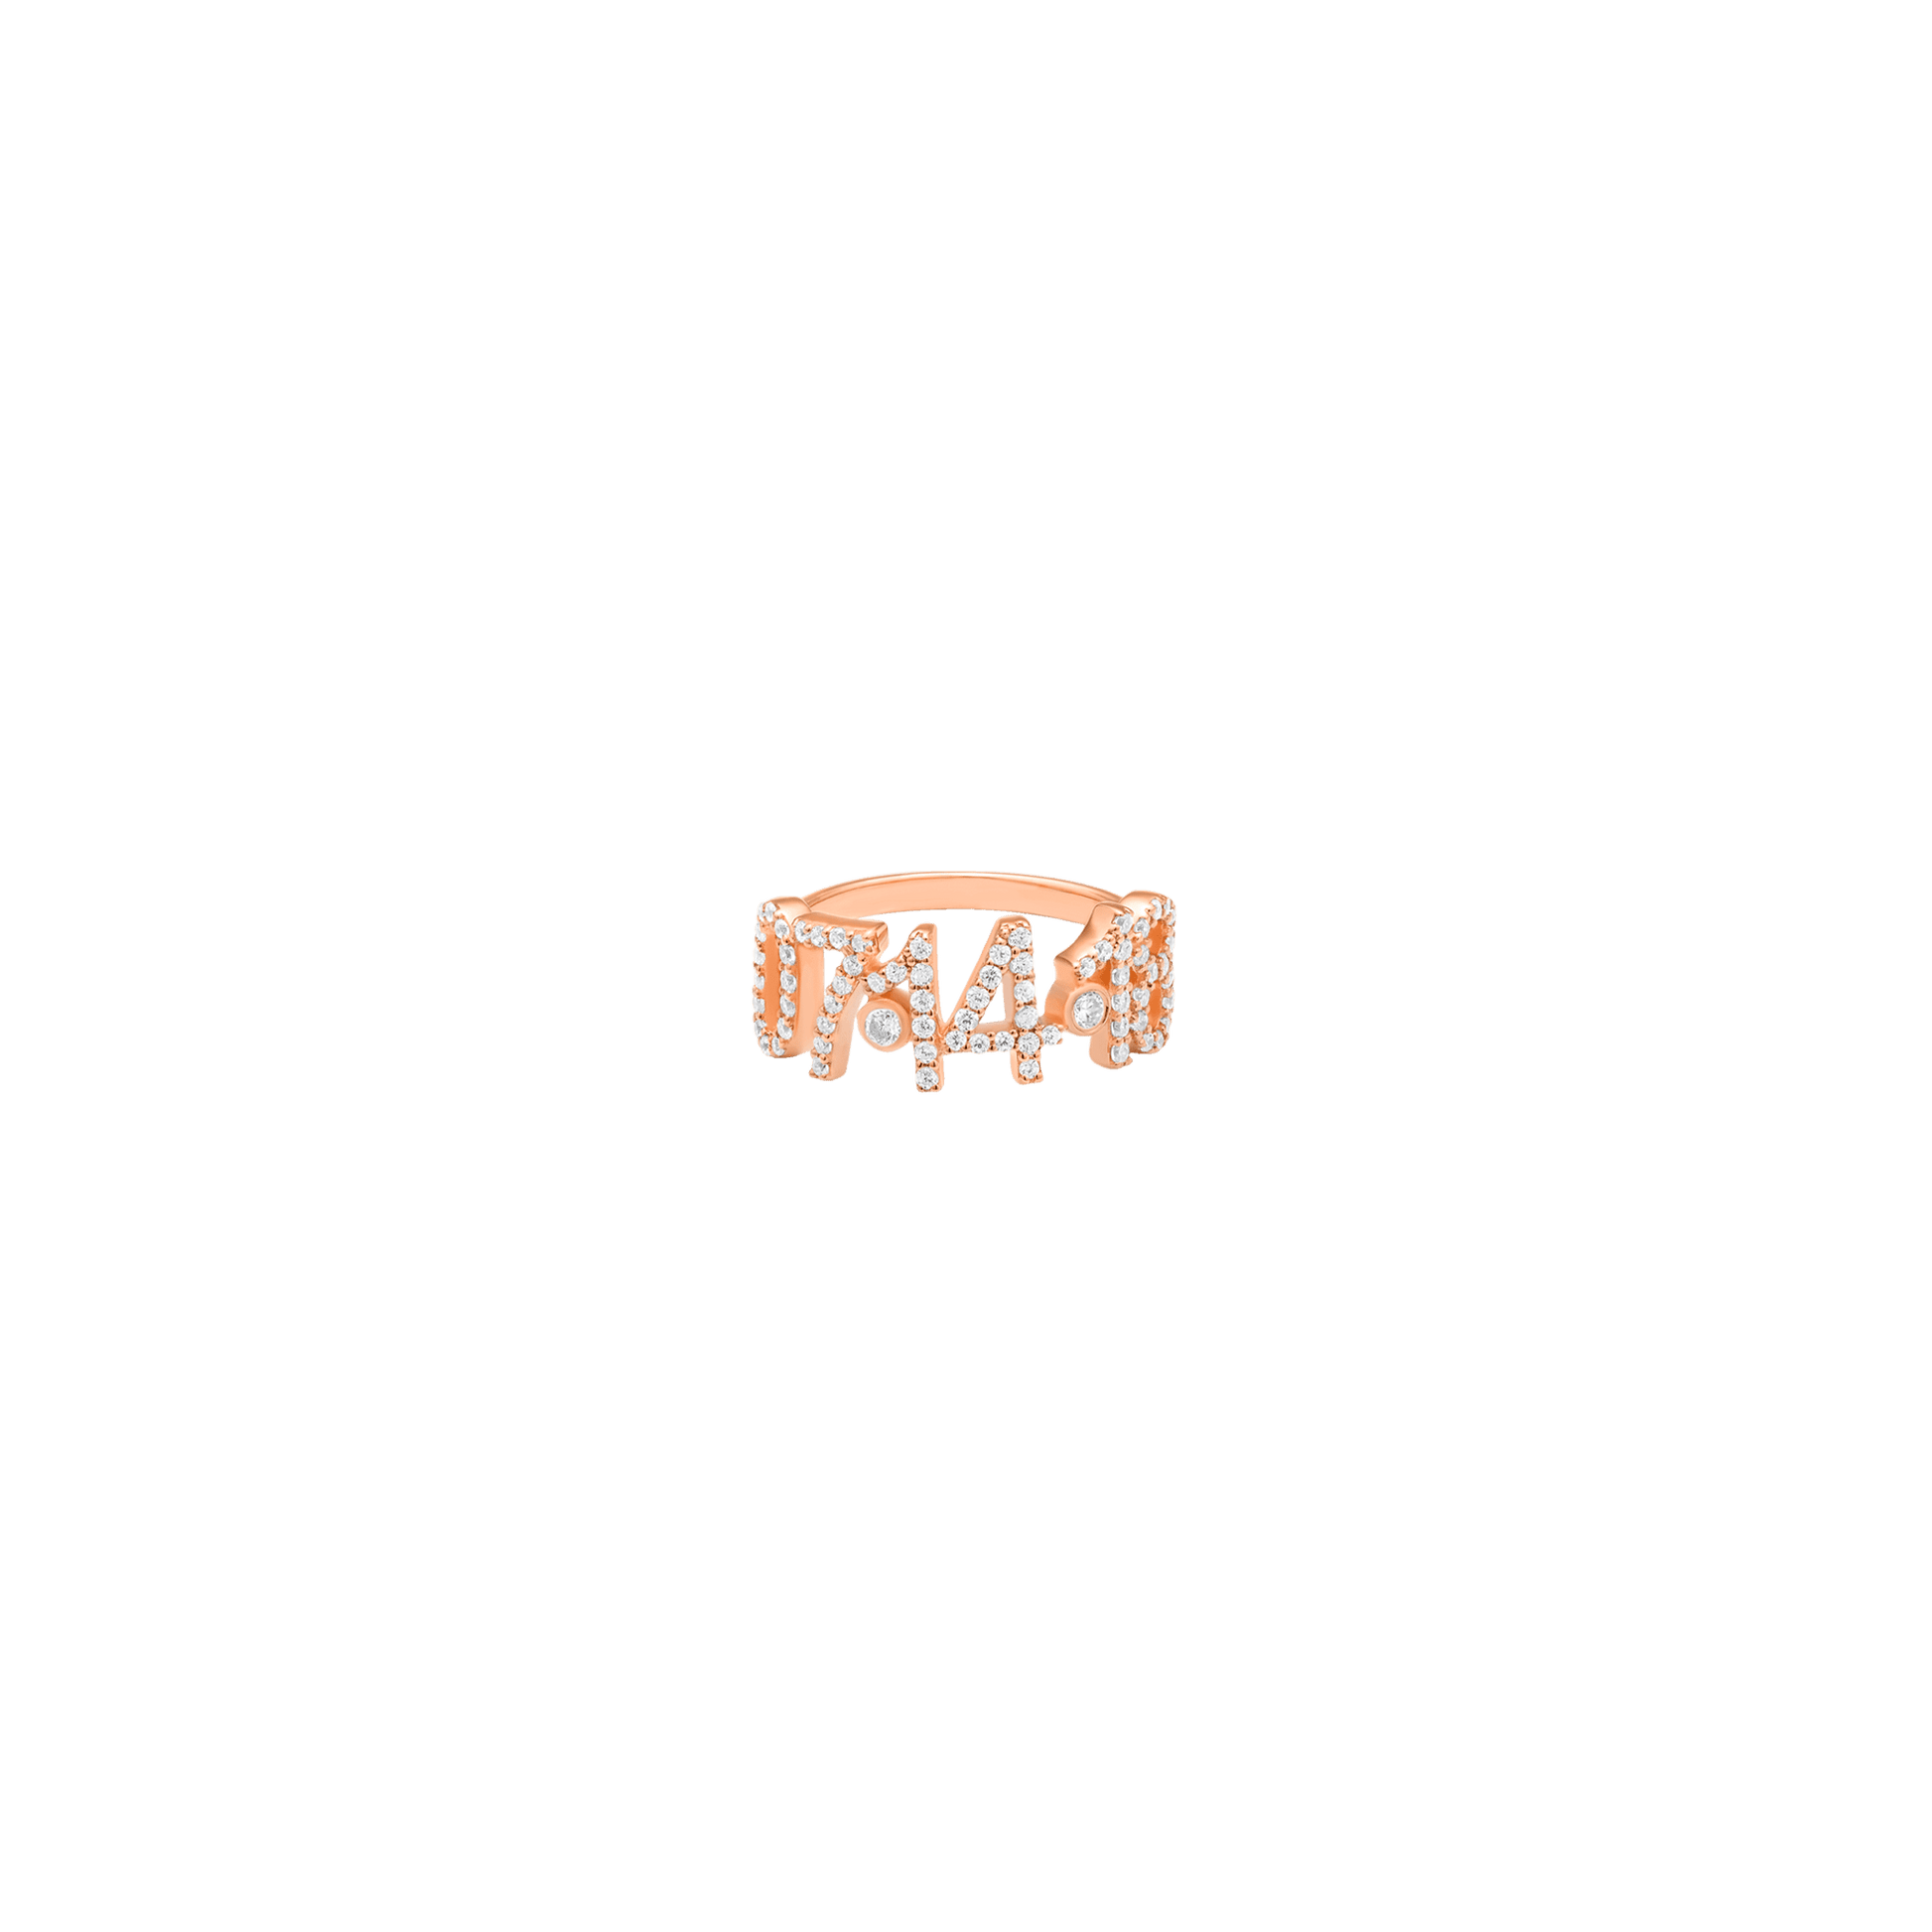 Birthdate Paved Diamond Ring - 14K Rose Gold Rings magal-dev US 4 